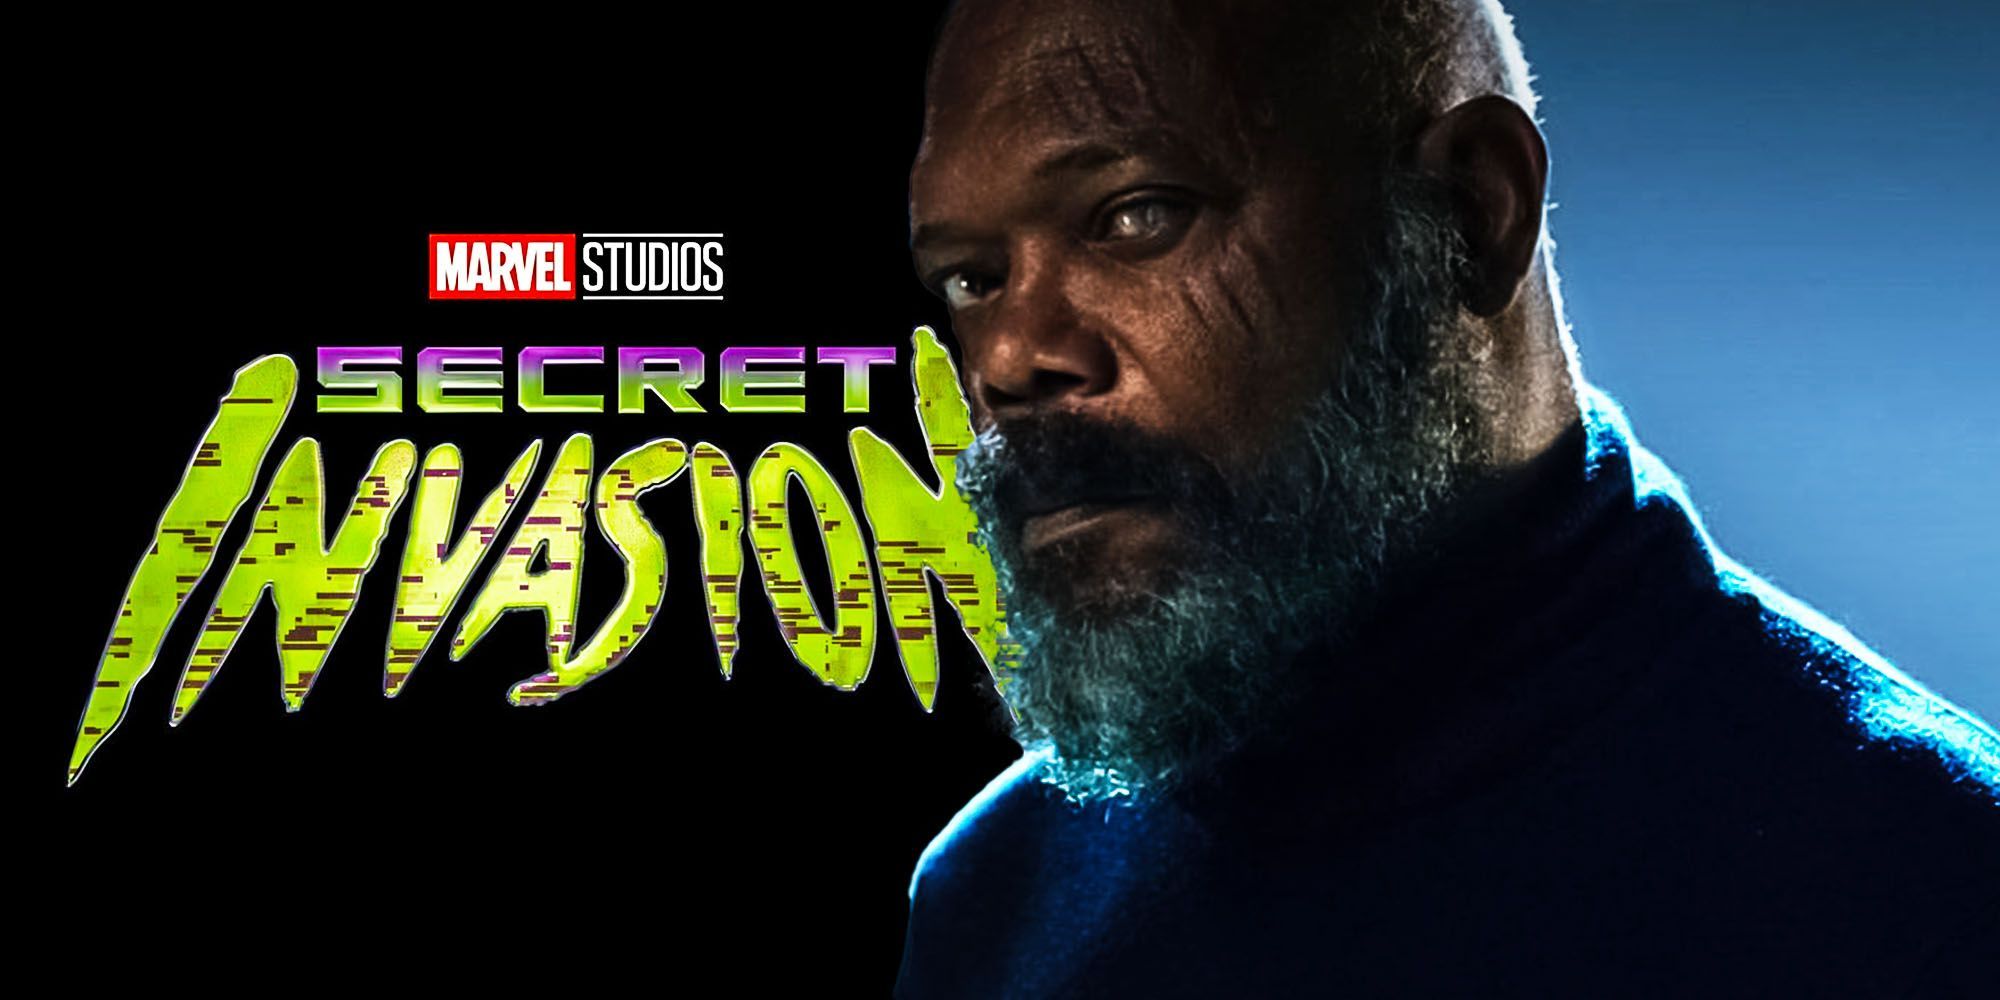 Black Panther Actor Returning for Marvel's Secret Invasion Disney+ Show